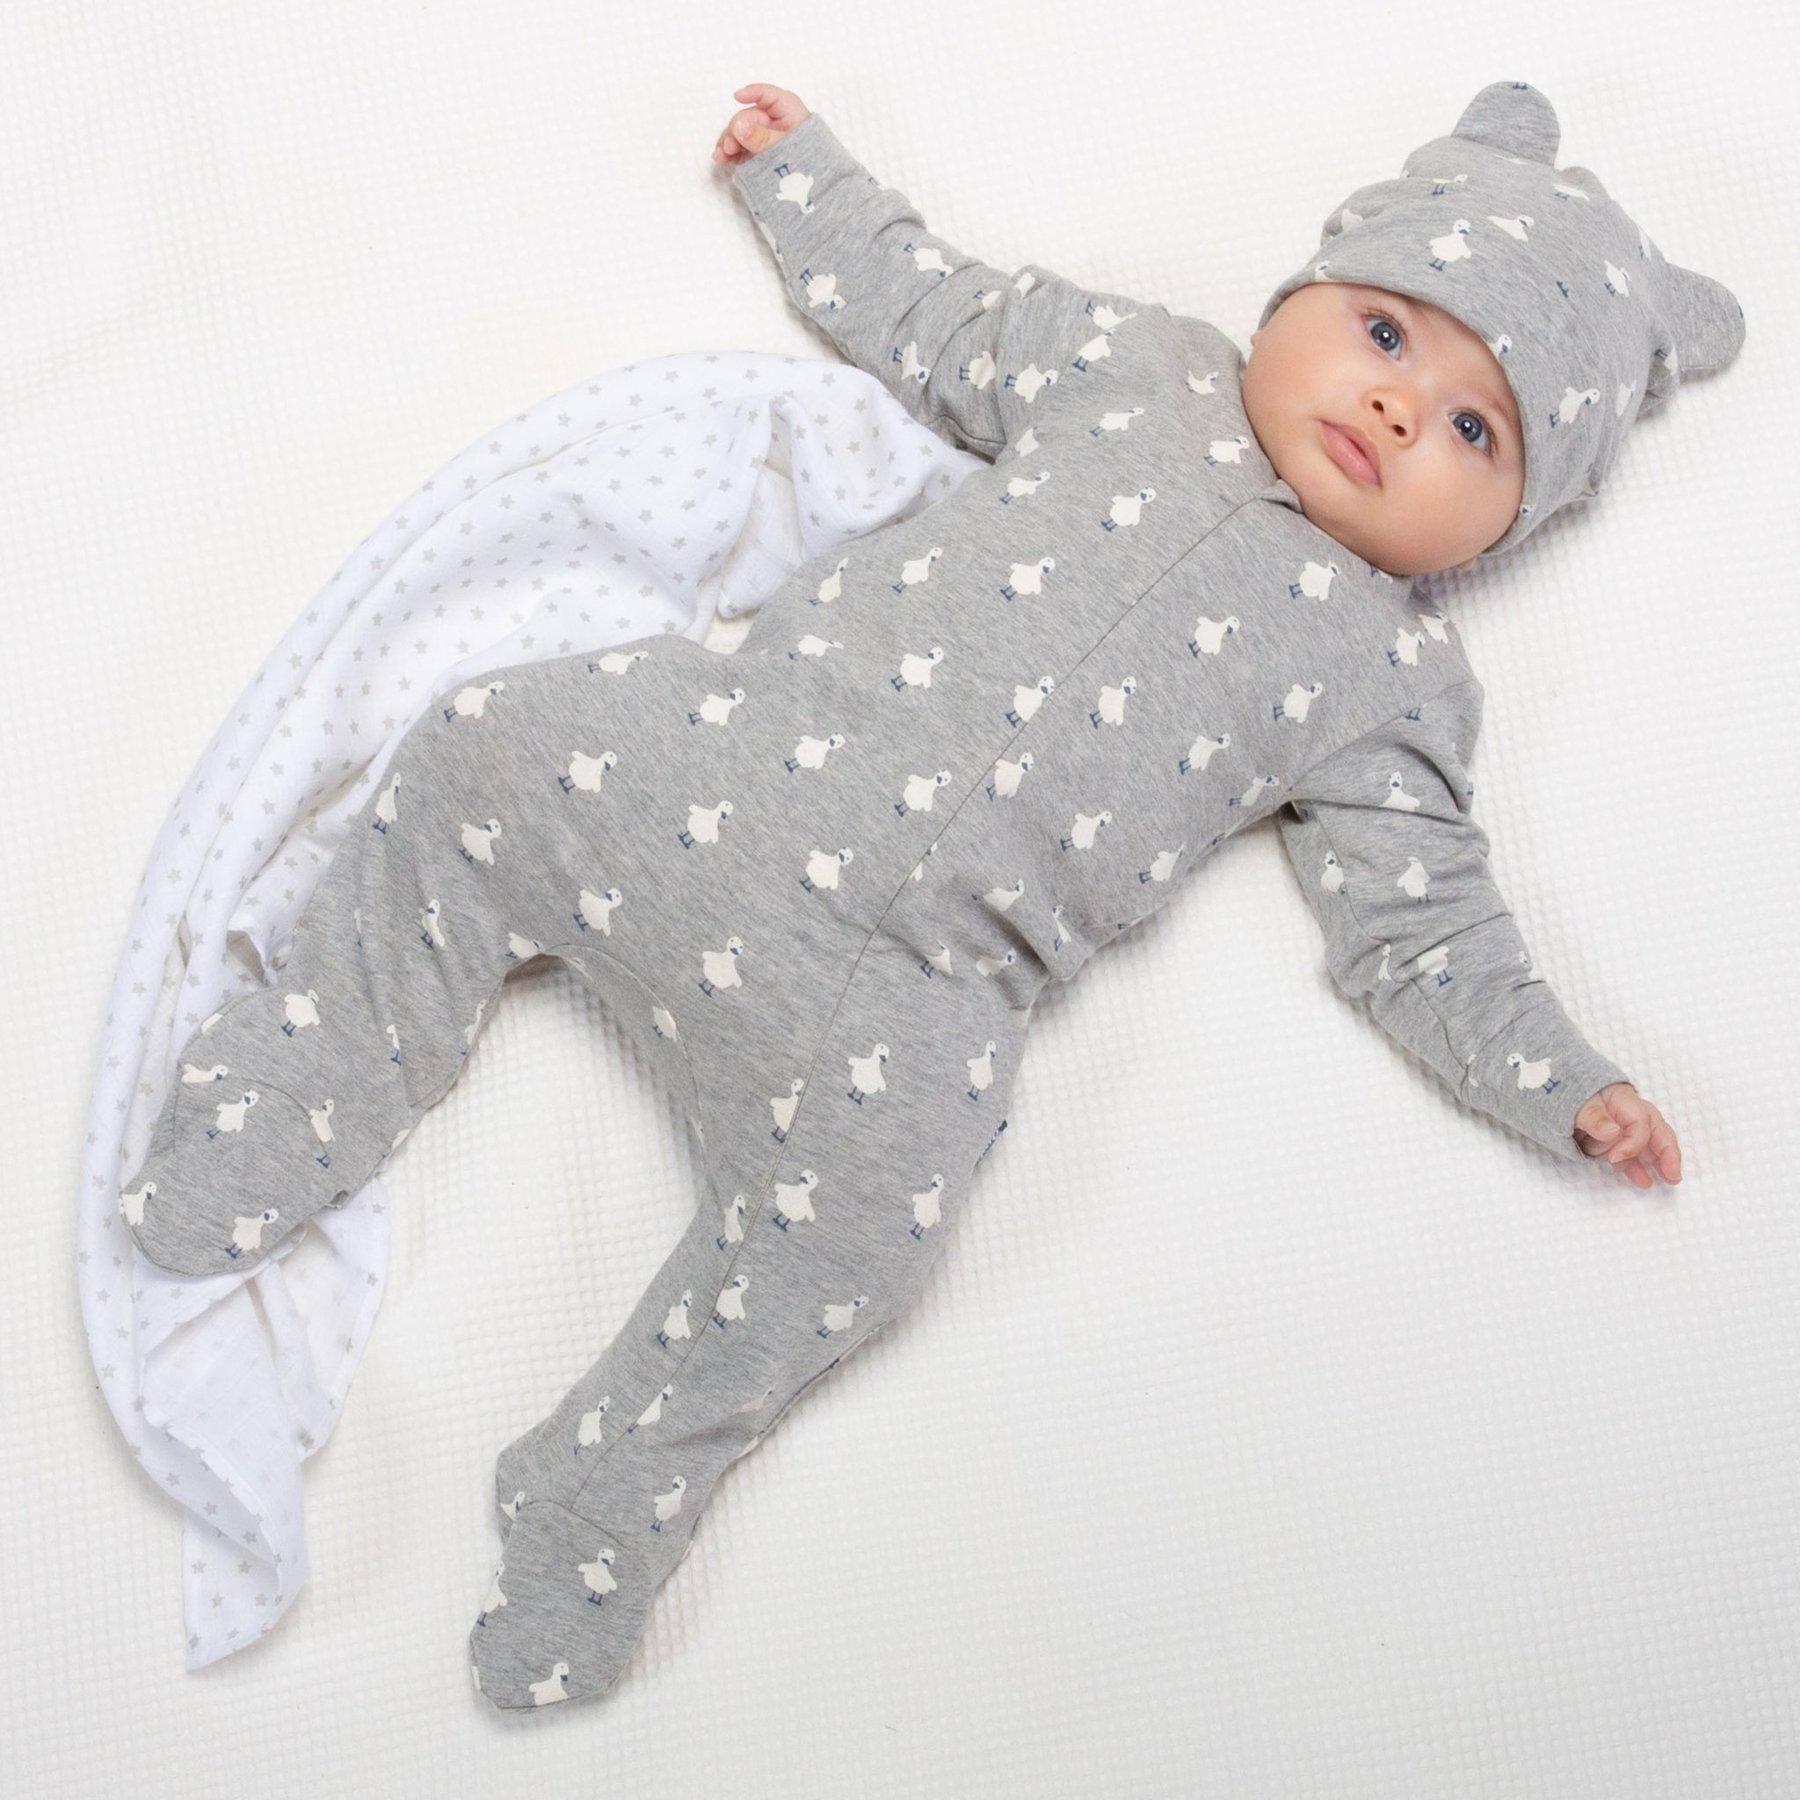 Baby wearing Kite Clothing Polka Duck Sleepsuit